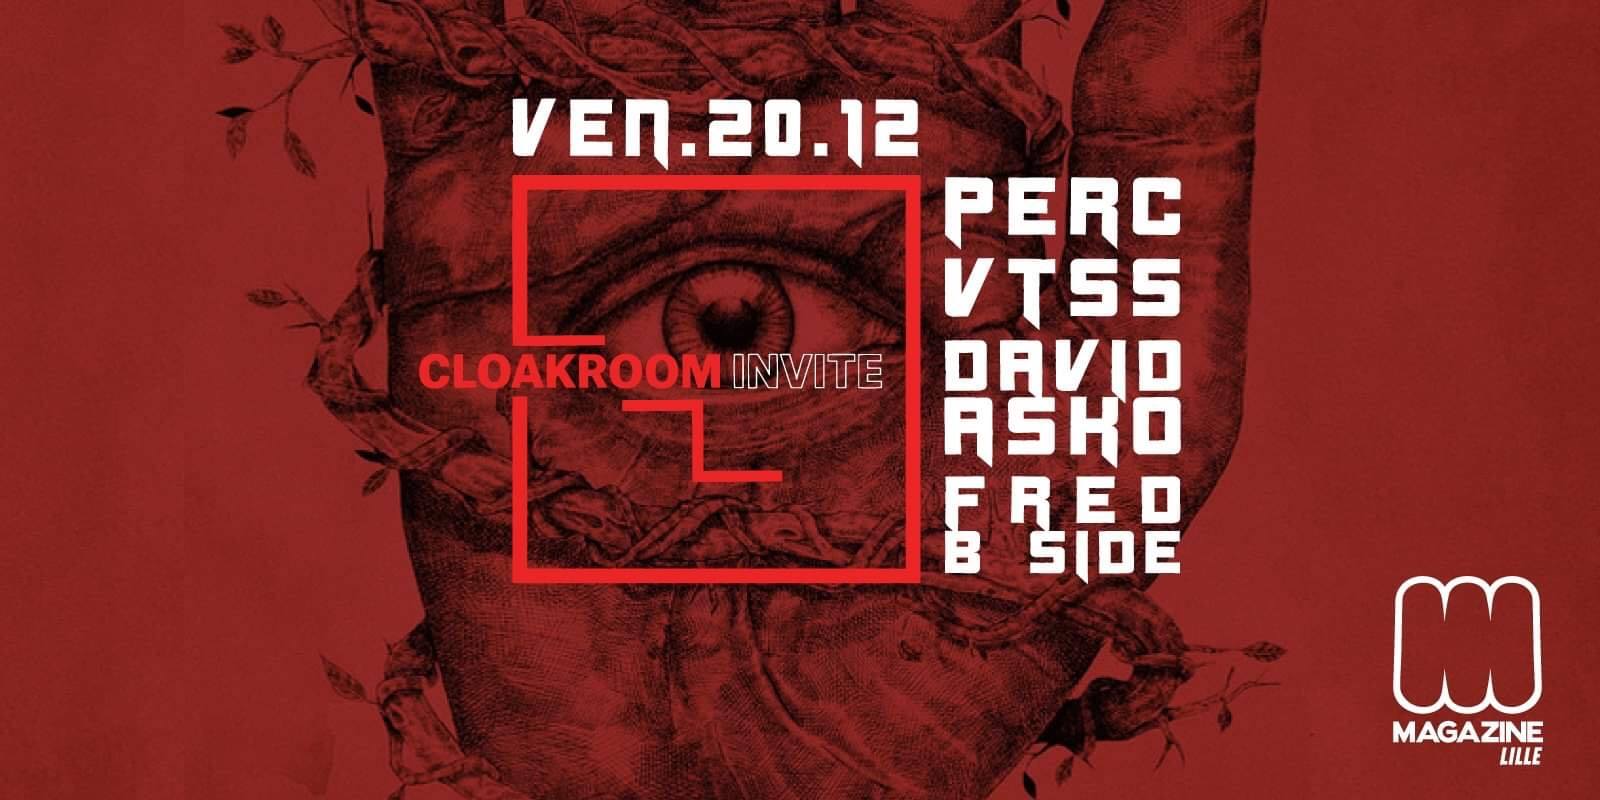 Cloakroom invite PERC et VTSS au Magazine Club le 20 décembre 2019